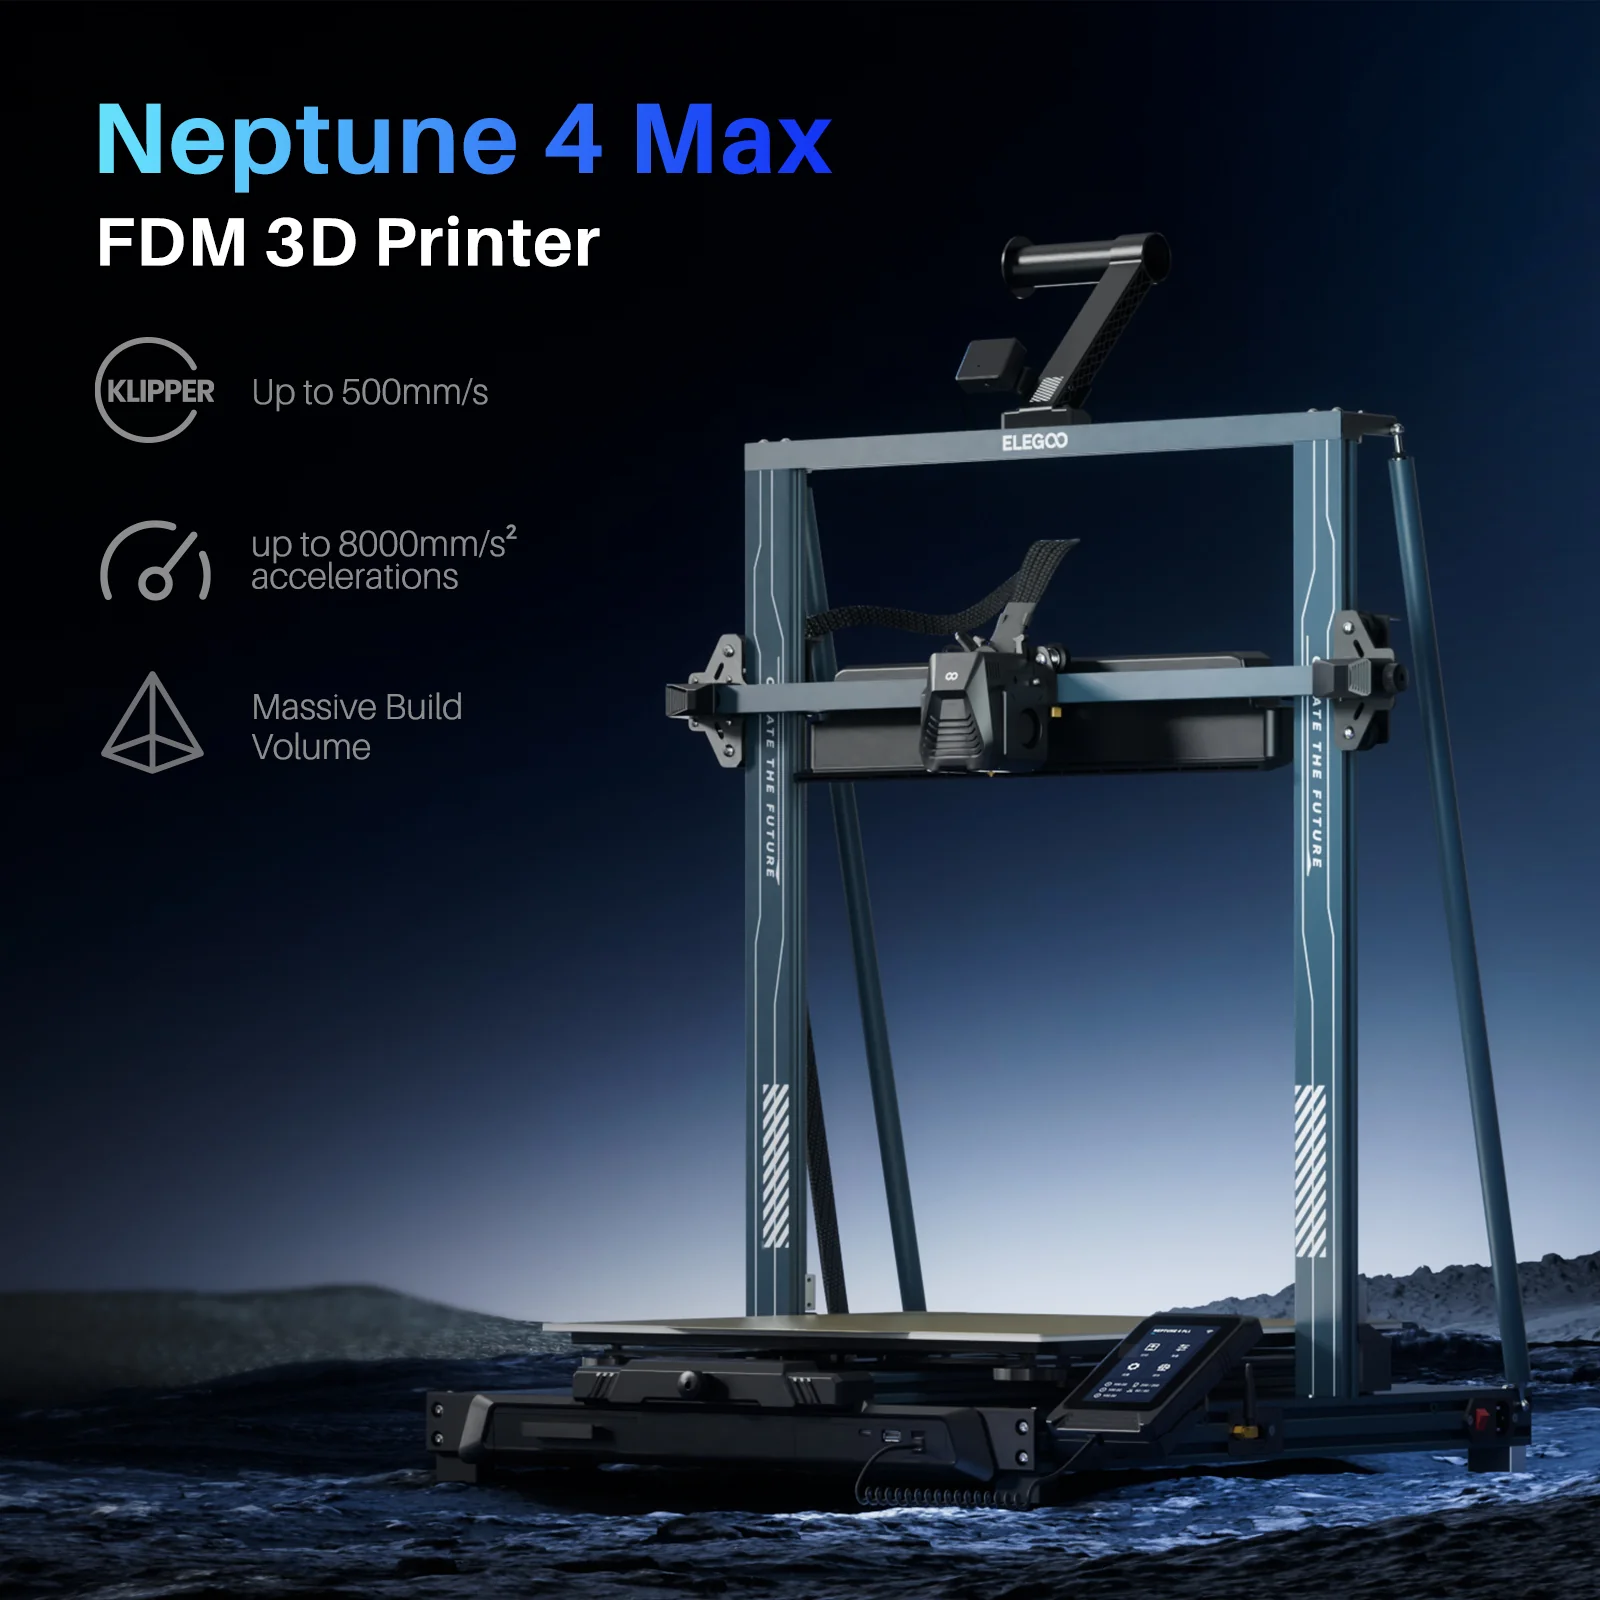 ELEGOO Neptune 2 FDM 3D Printer